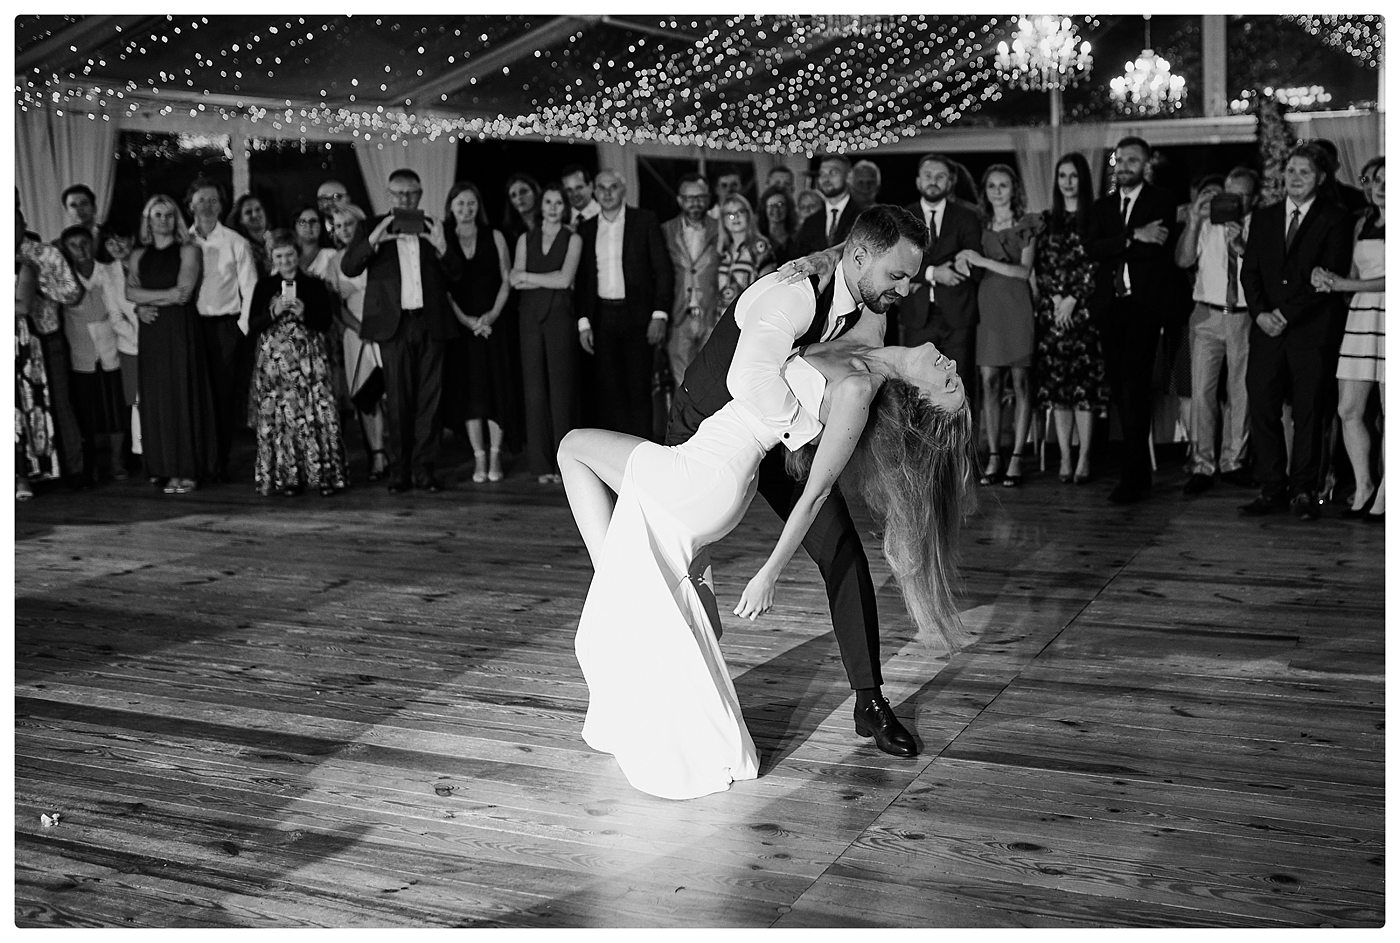 para młoda tańczy swój pierwszy taniec podczas wesela w Dworku w Woskrzenicach